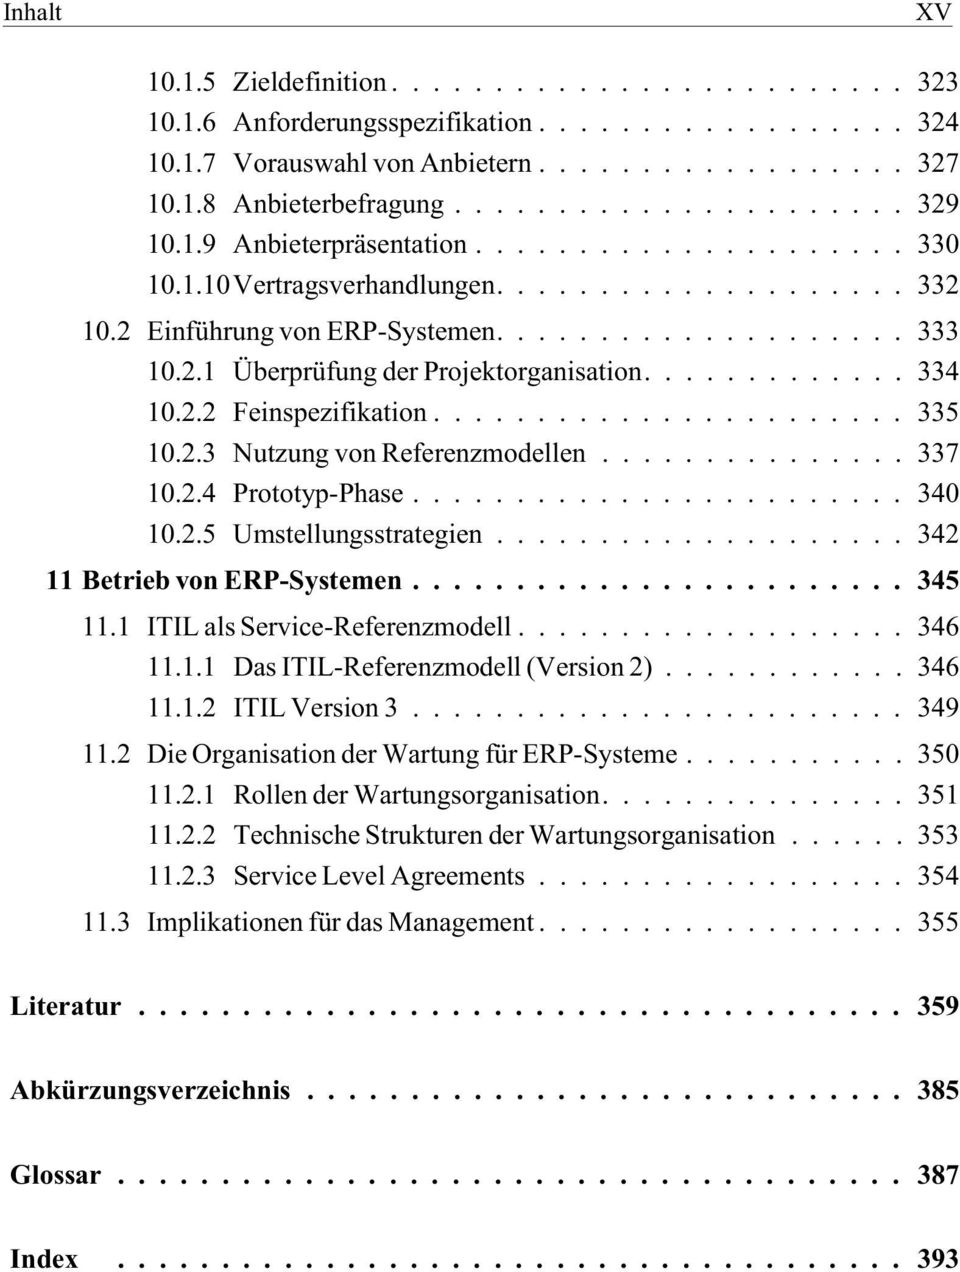 2.5 Umstellungsstrategien...342 11 Betrieb von ERP-Systemen...345 11.1 ITIL als Service-Referenzmodell...346 11.1.1 Das ITIL-Referenzmodell (Version 2)... 346 11.1.2 ITIL Version 3...349 11.